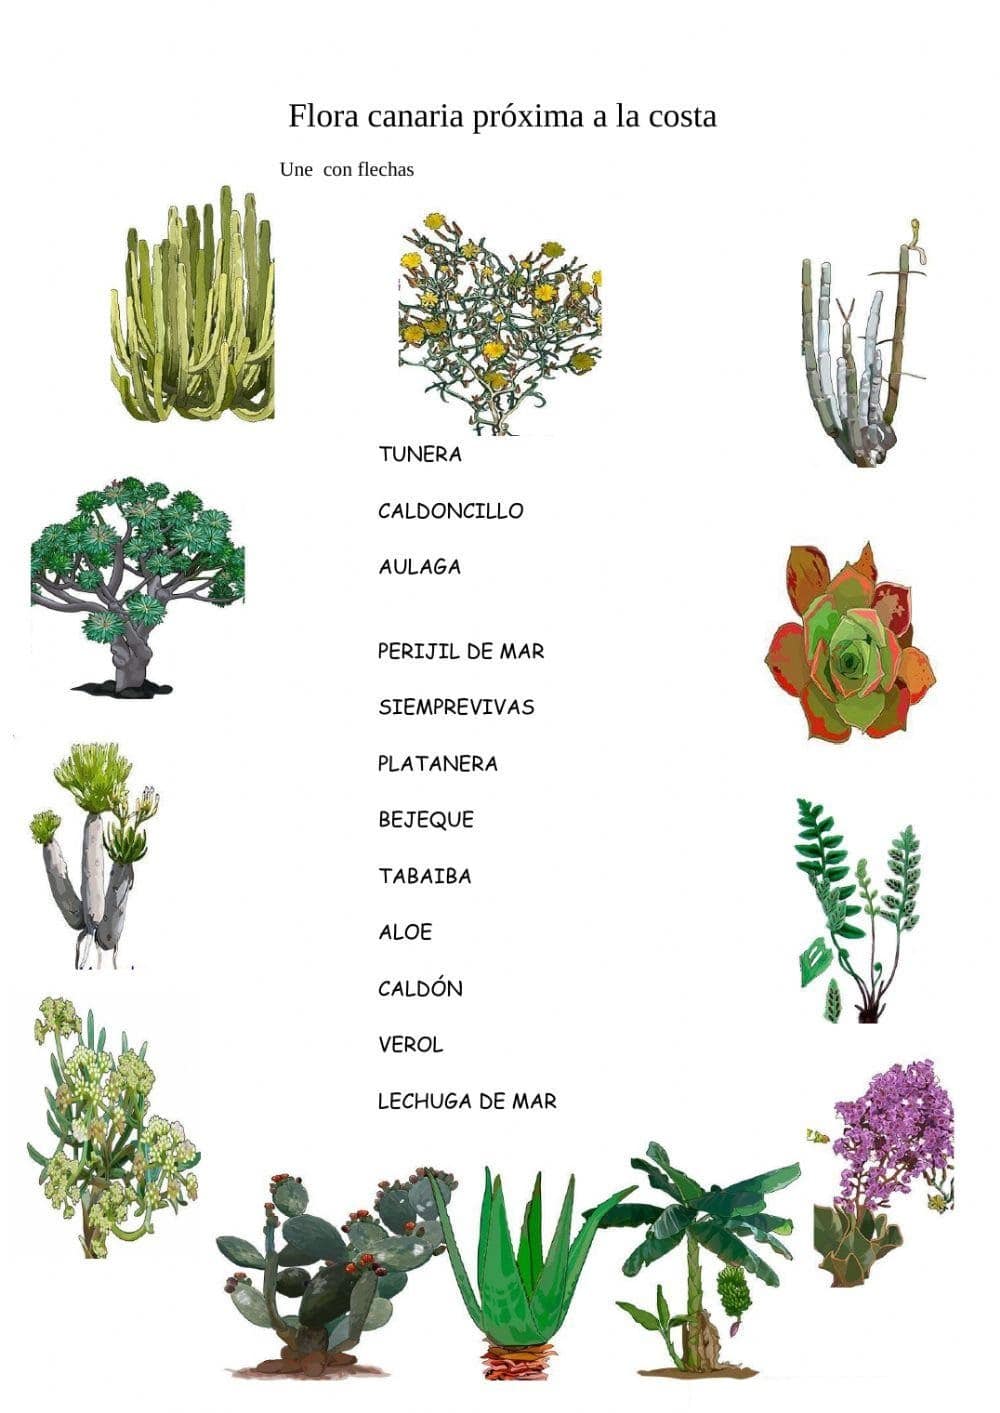 Fichas de plantas canarias: Descubre la diversidad botánica de las Islas Canarias